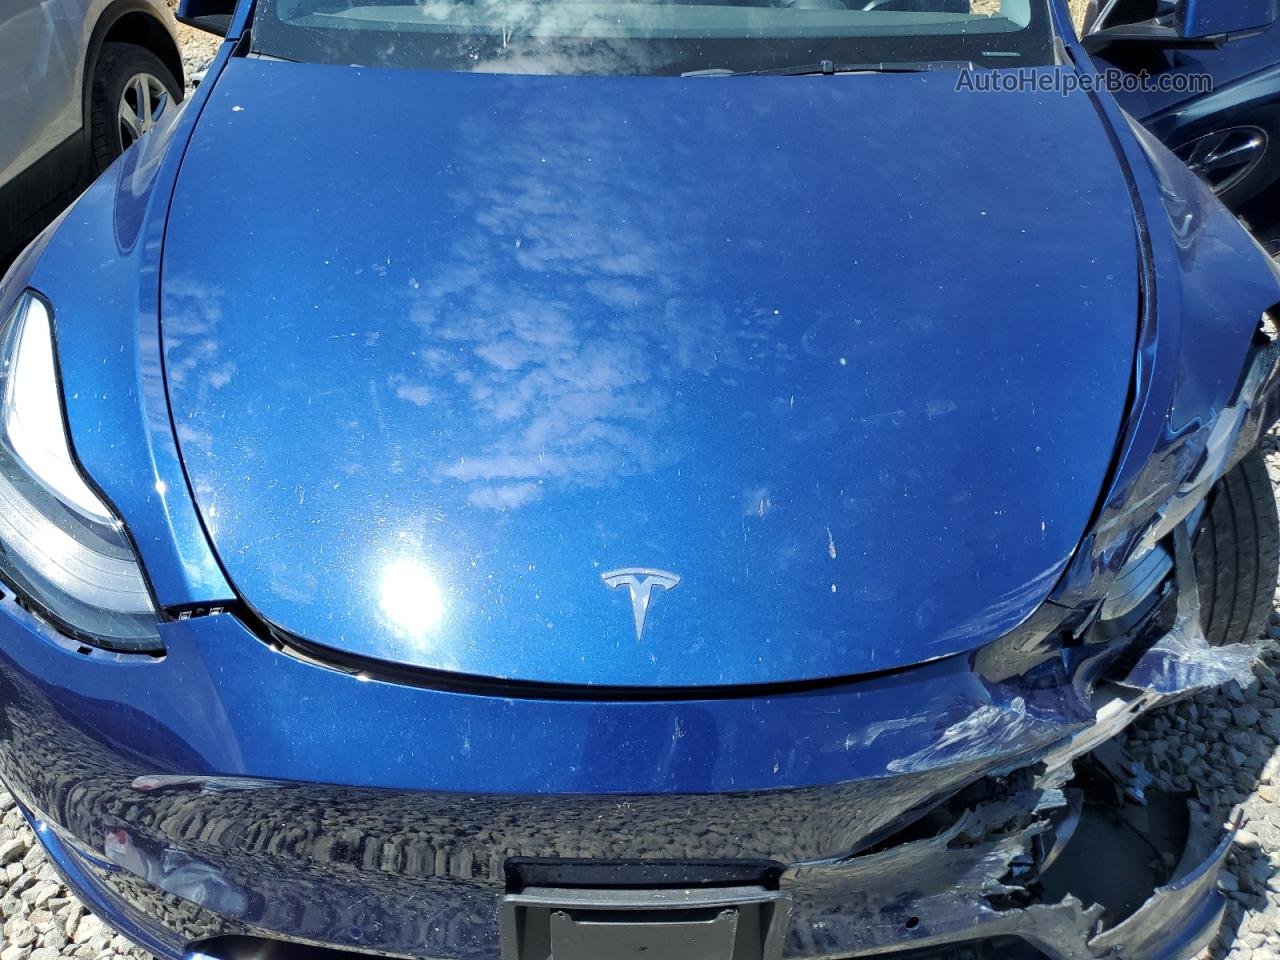 2021 Tesla Model Y  Blue vin: 5YJYGDEE3MF095414